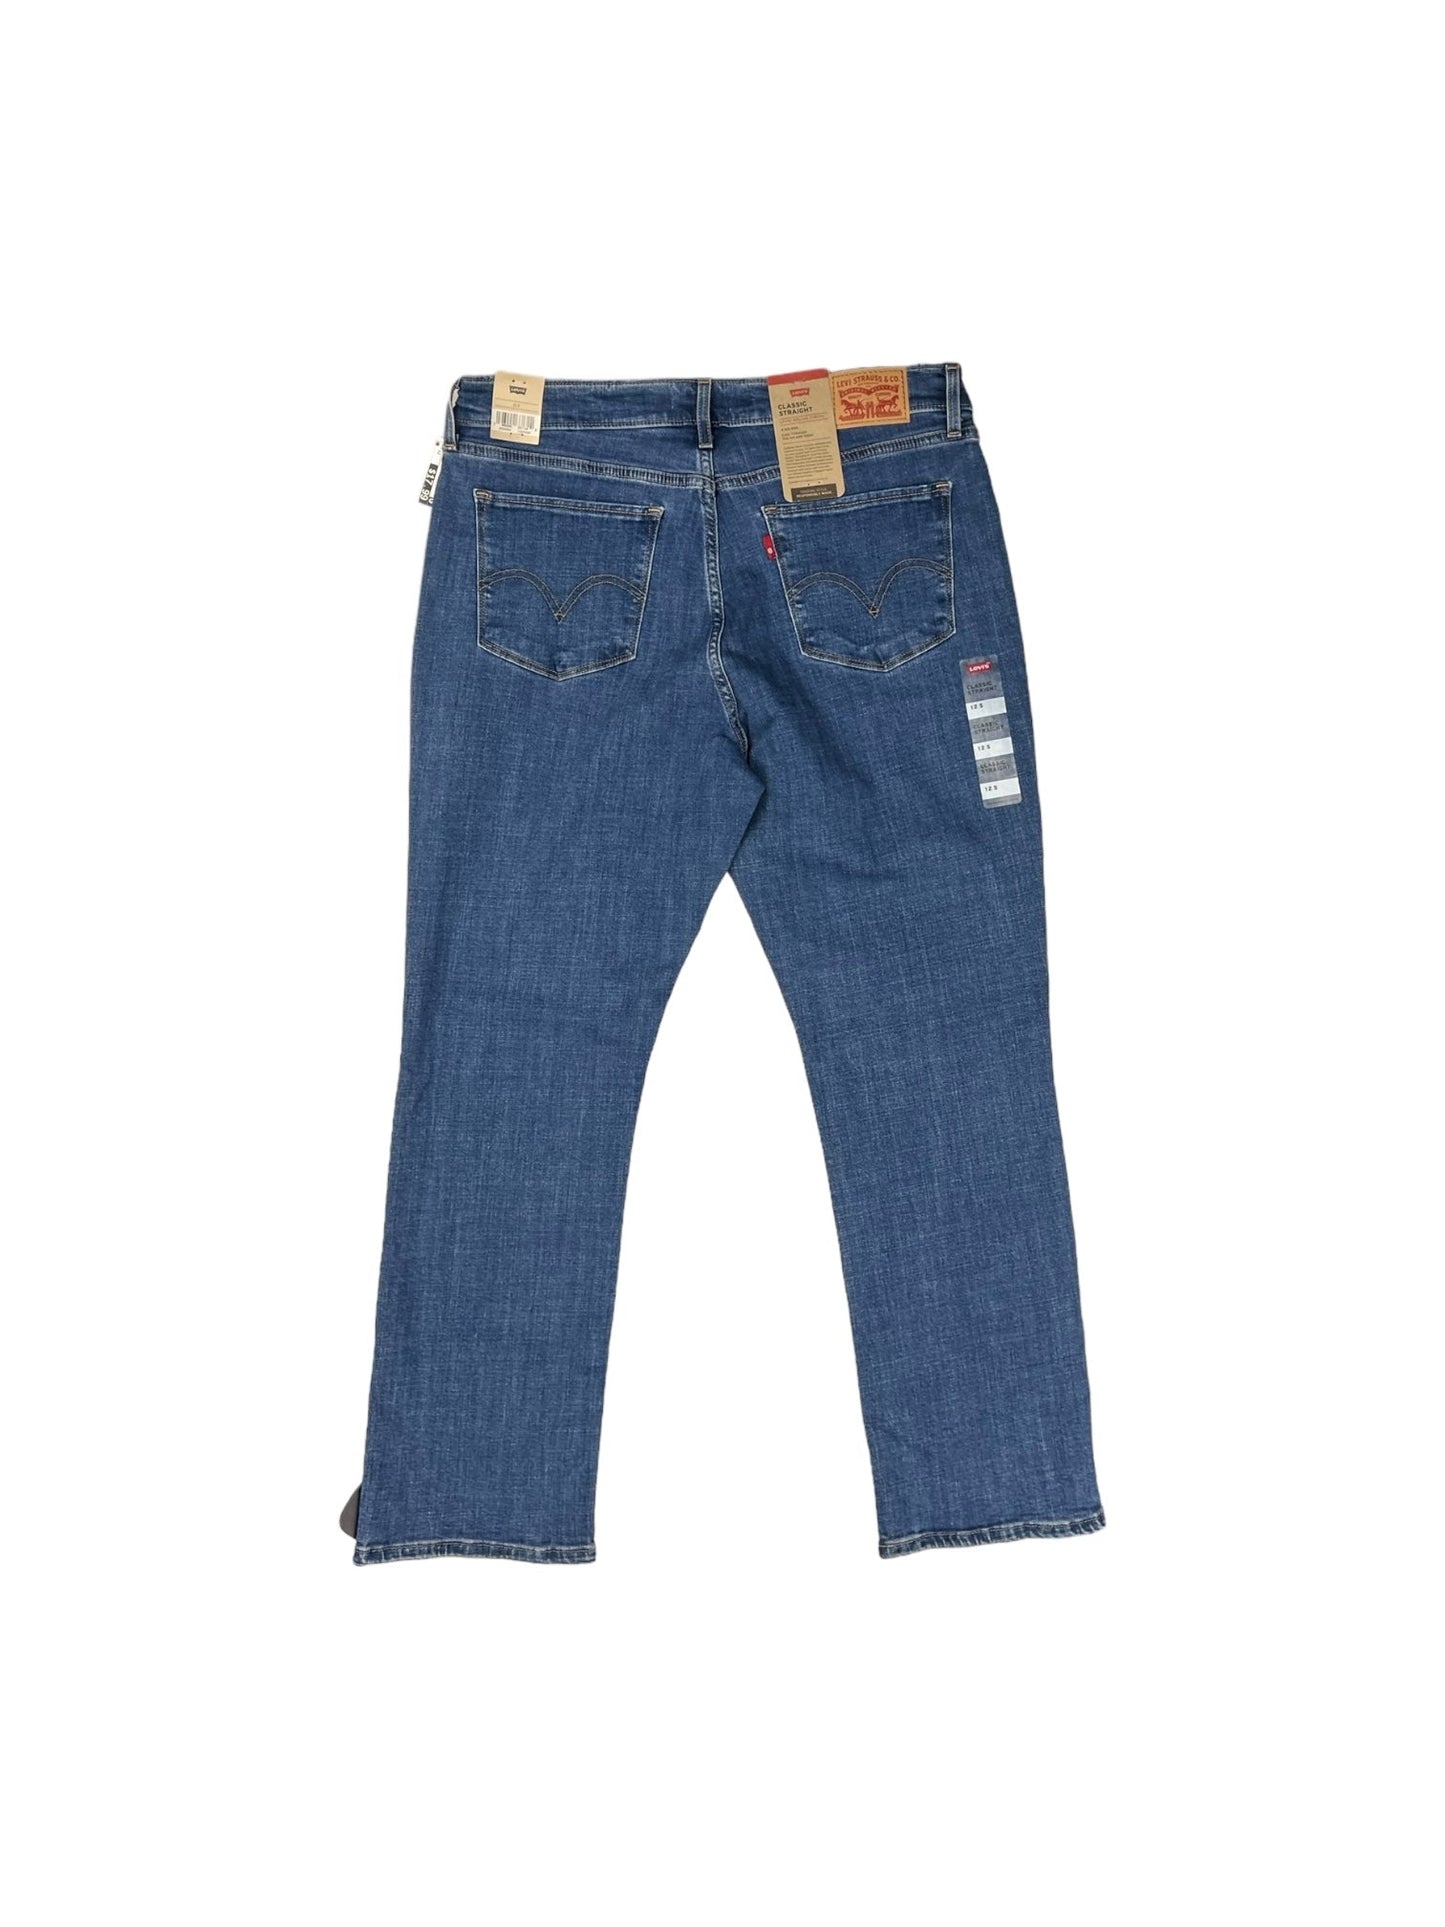 Blue Denim Jeans Straight Levis, Size 12